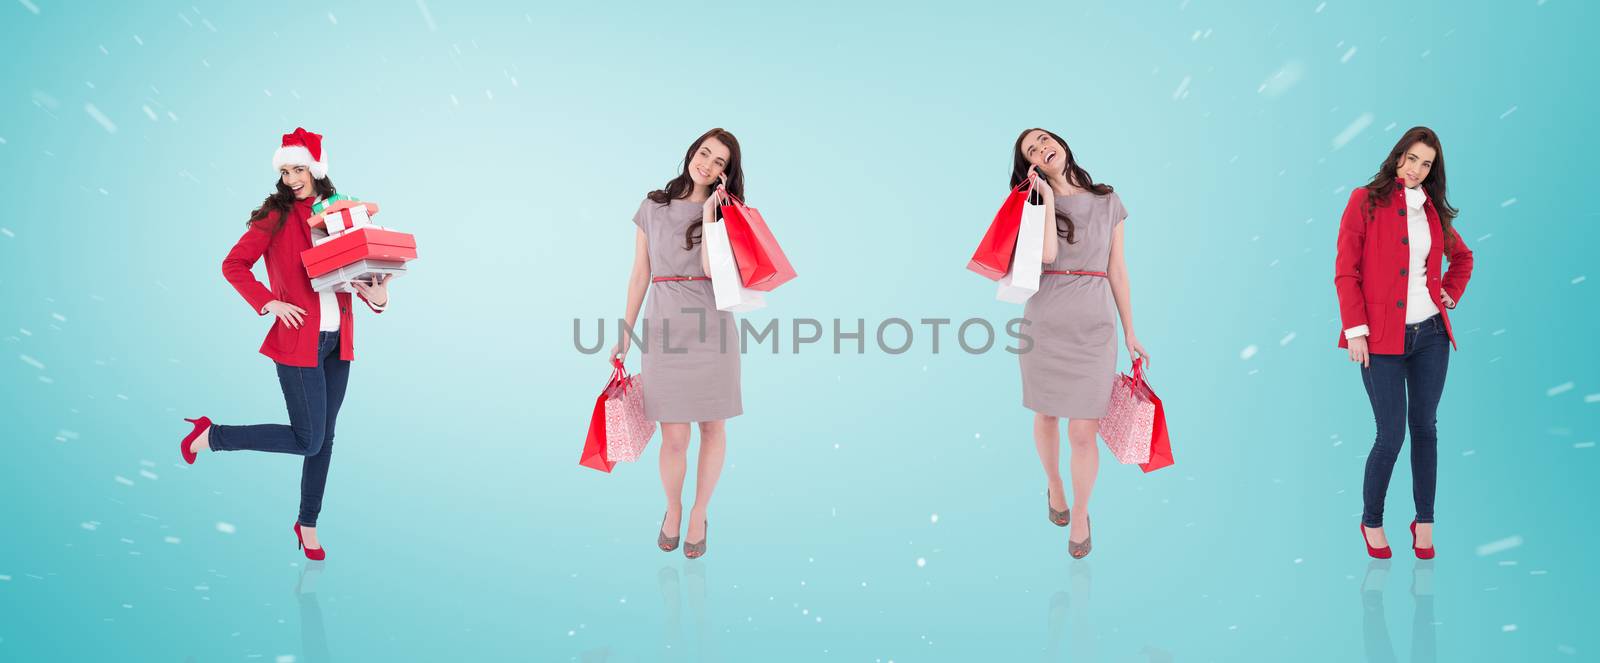 Composite image of different elegant brunettes against blue vignette